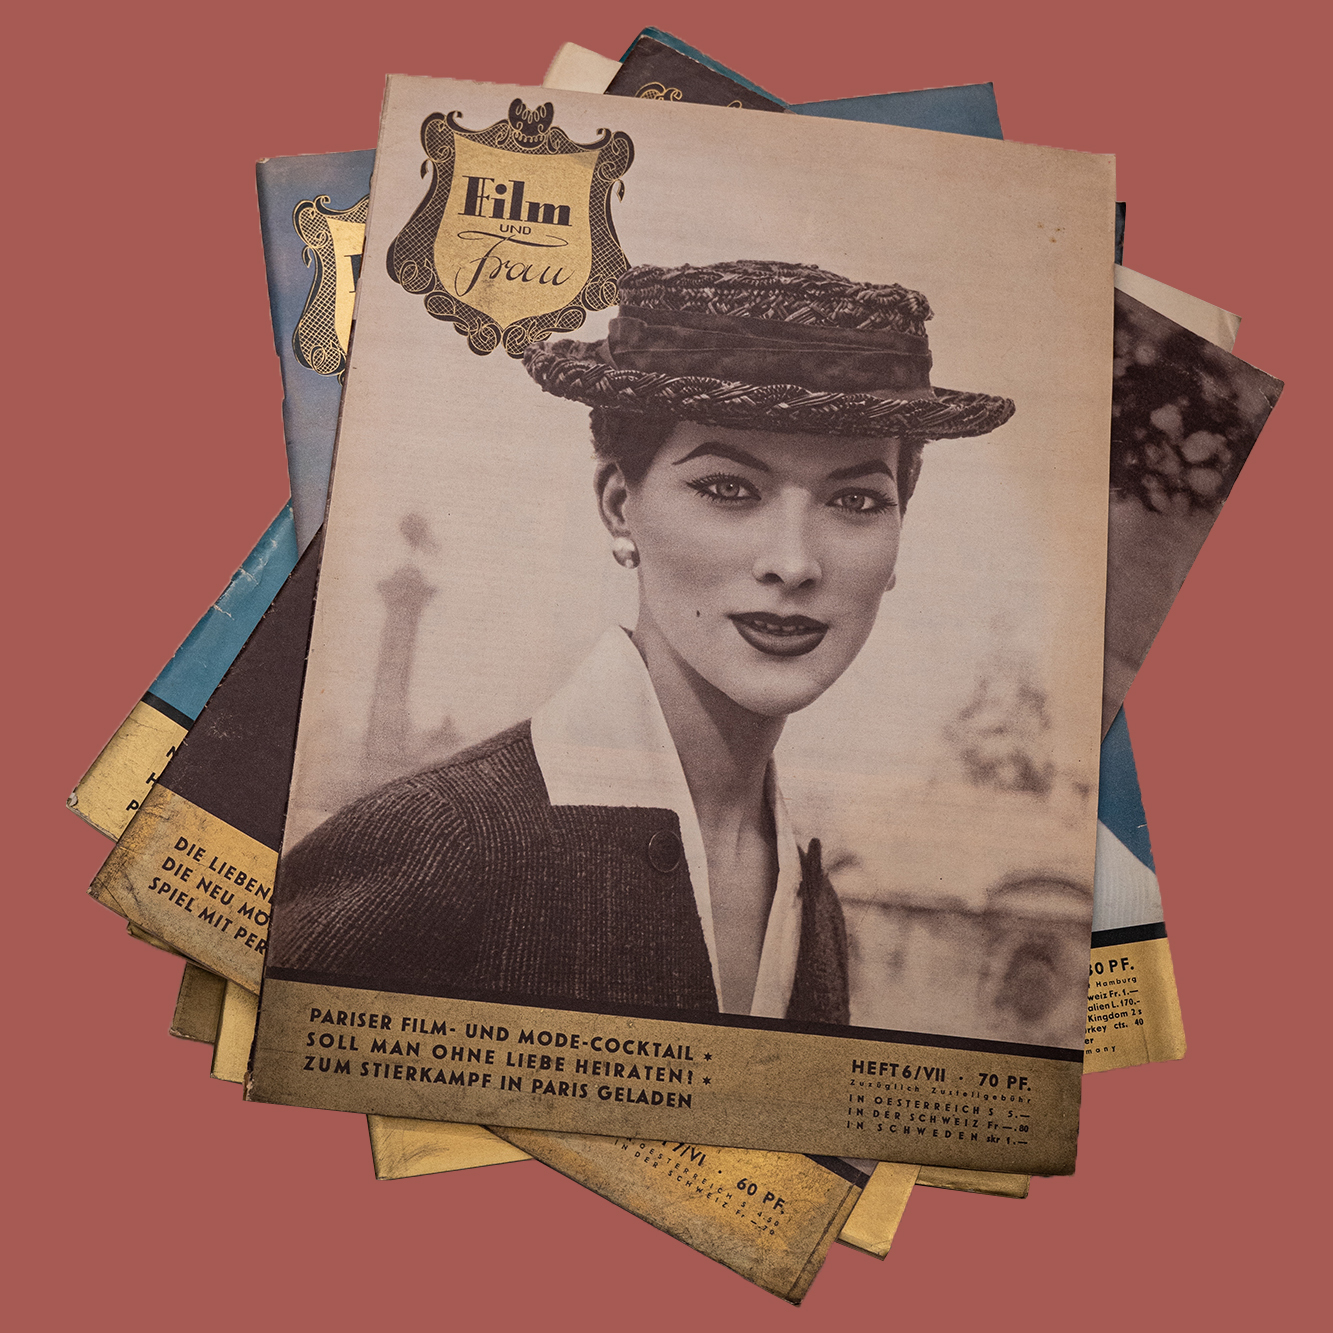 Mehrere Zeitschriften liegen auf einem Stapel auf einer roten Unterlage. Auf dem Coder ist eine schwarz-weiß Fotografie einer Frau zu sehen.